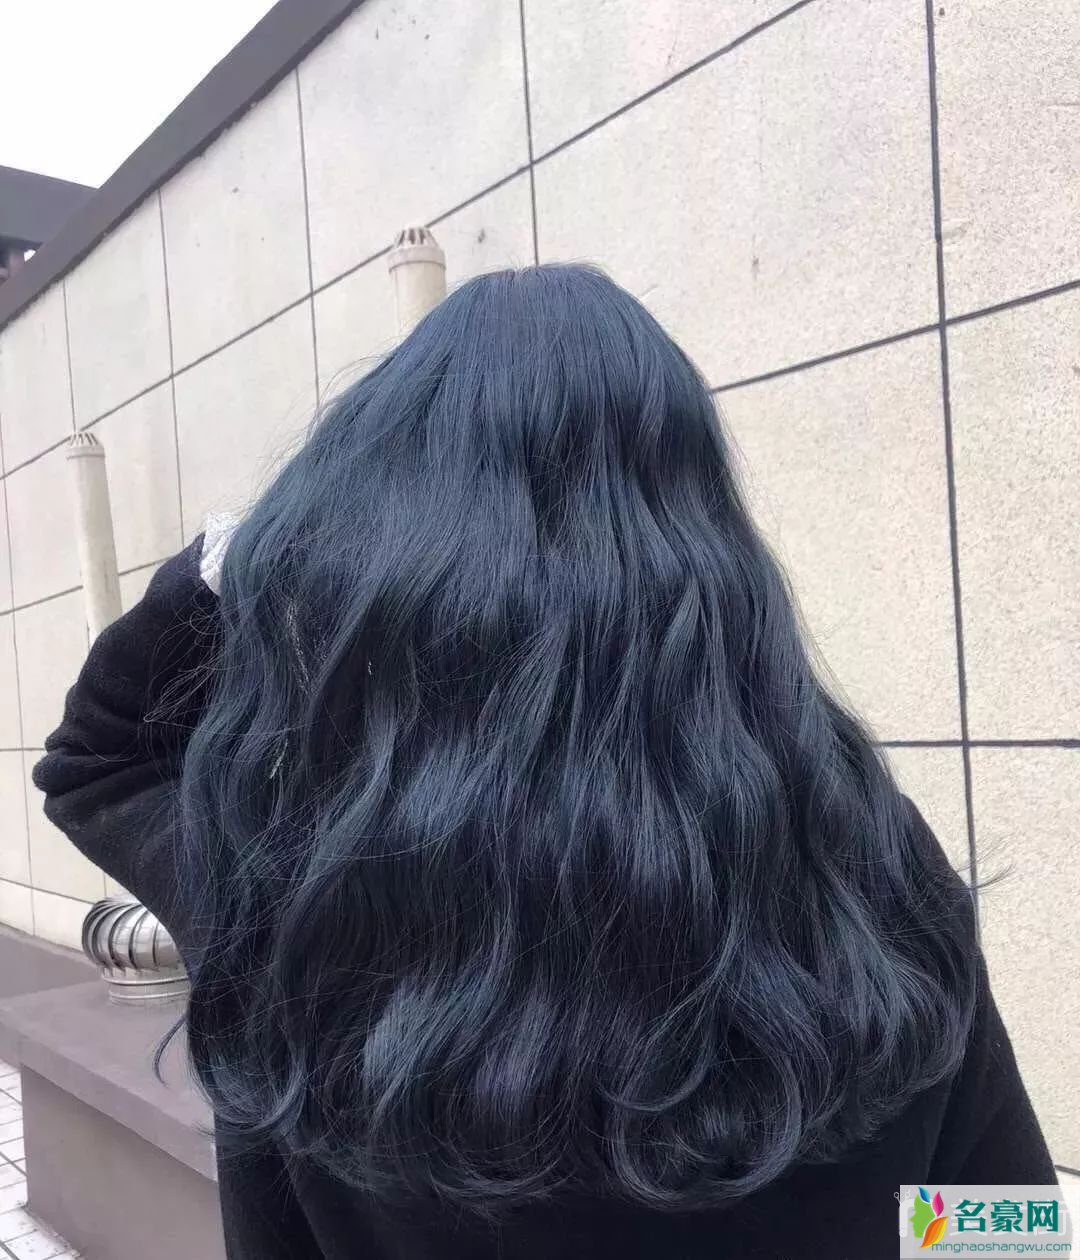 2019最火的头发颜色是蓝黑色2